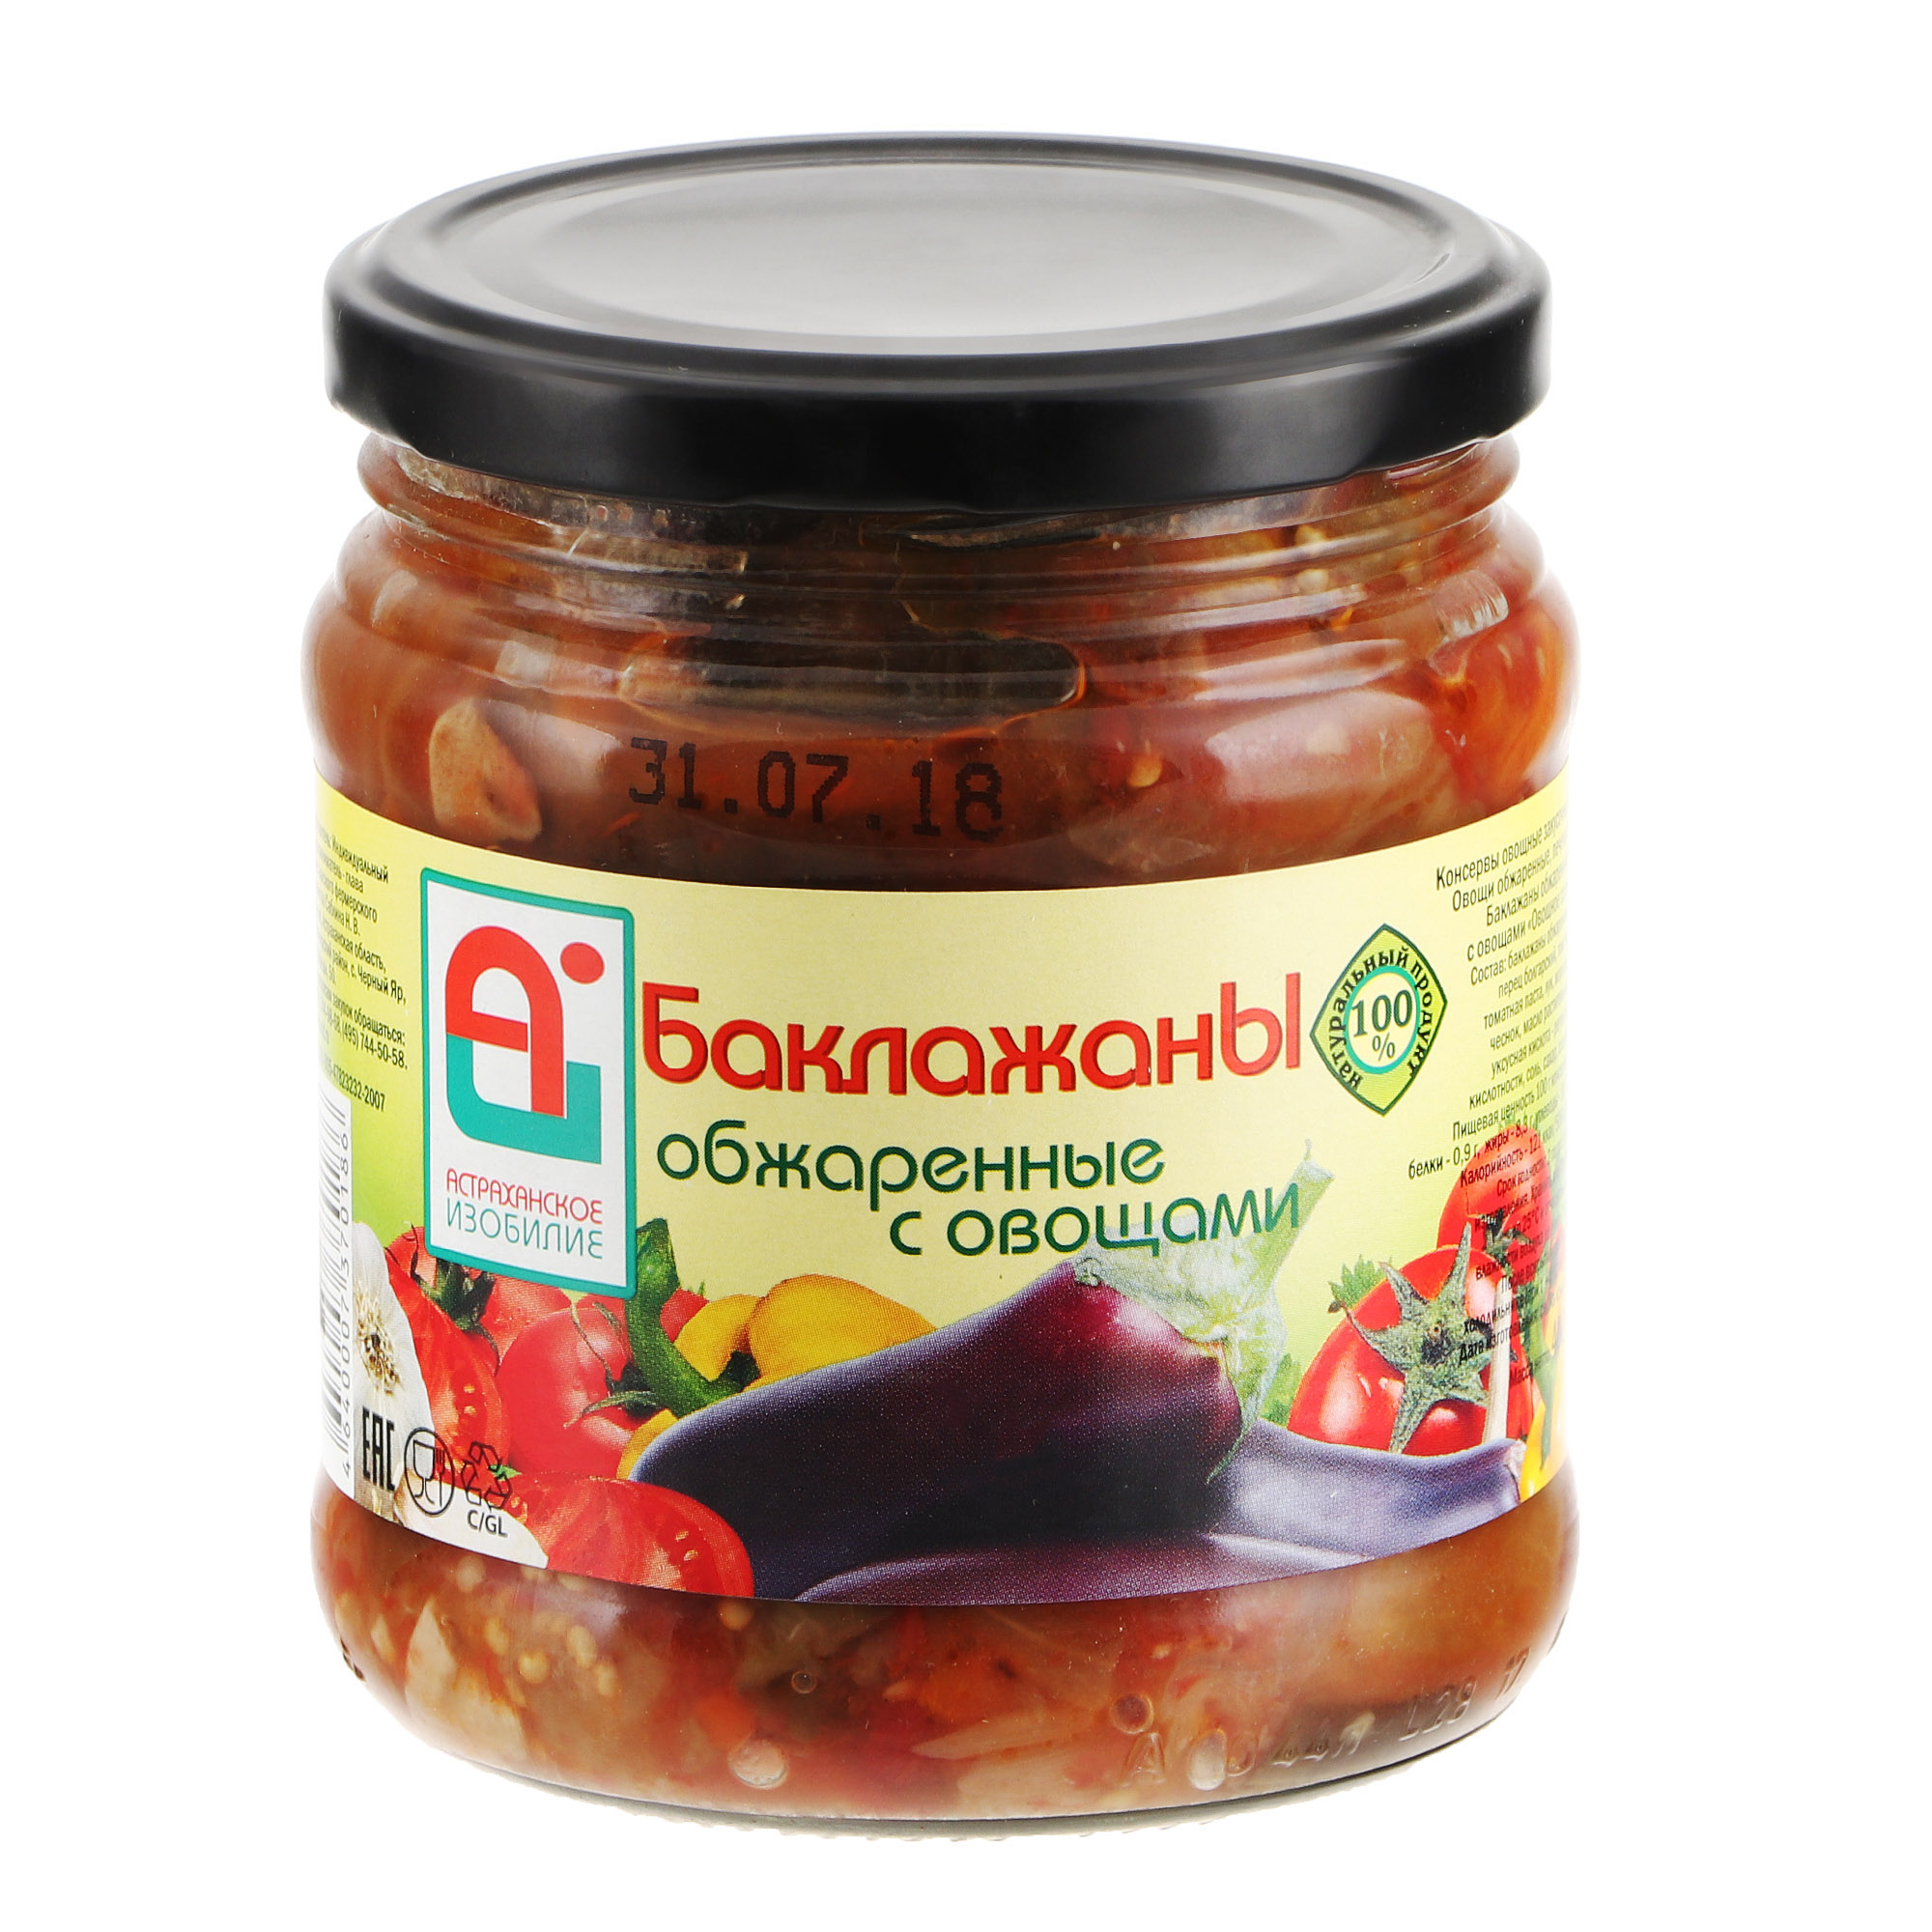 Баклажаны обжаренные Астраханское Изобилие с овощами 500 г аджика астраханское изобилие домашняя 500 г